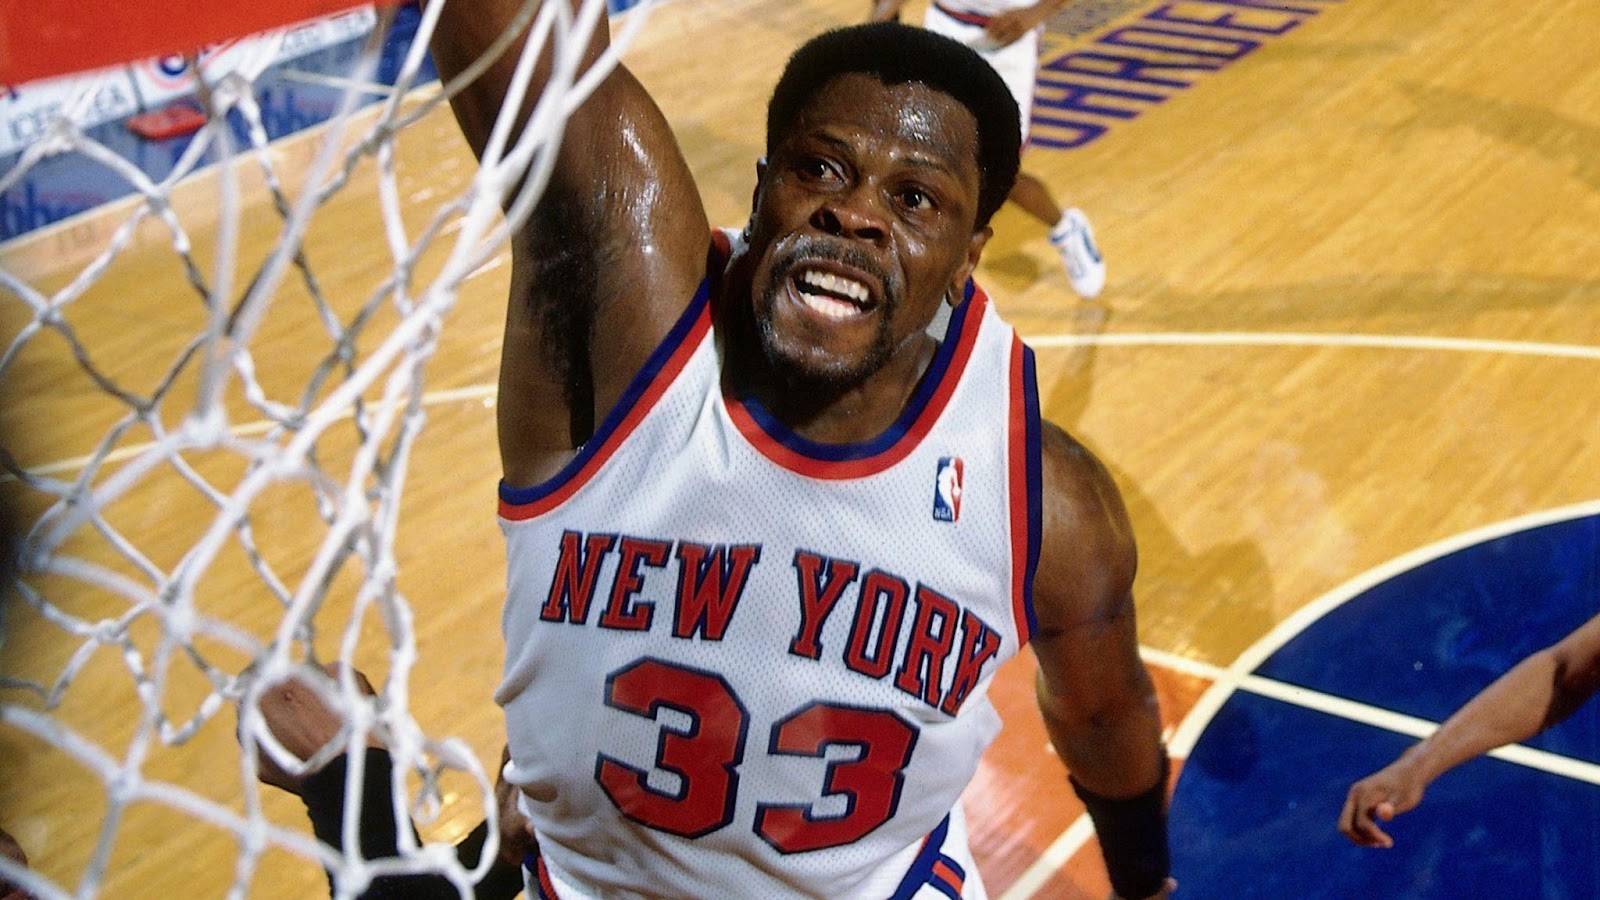 ทำไมทีมที่ฟอร์มหล่นวูปอย่าง นิวยอร์ก นิกส์ ถึงเคยเป็นทีมที่มีมูลค่าอันดับ 1 ของ NBA5